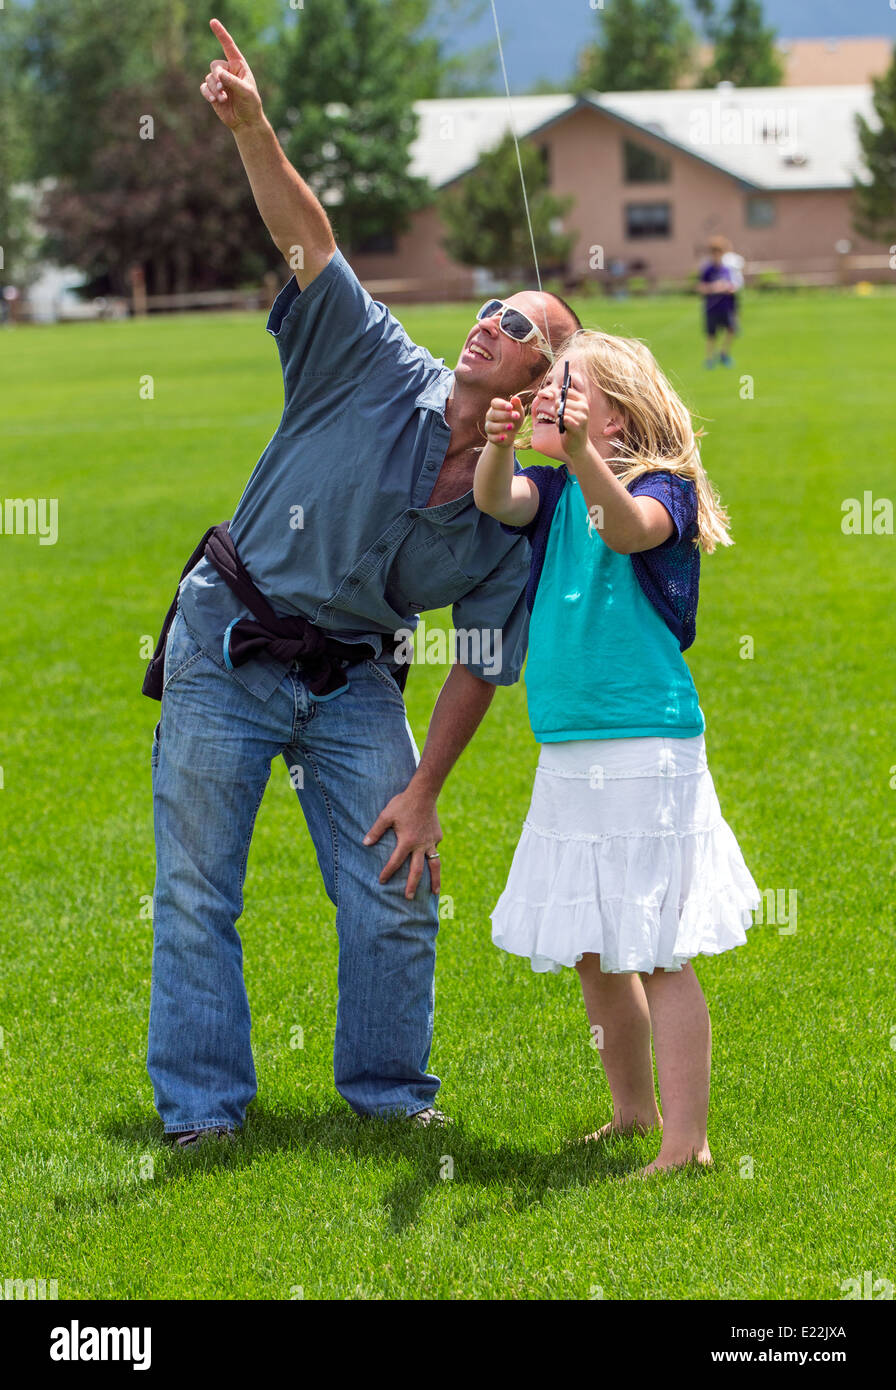 Père & fille flying a kite sur les champs Banque D'Images